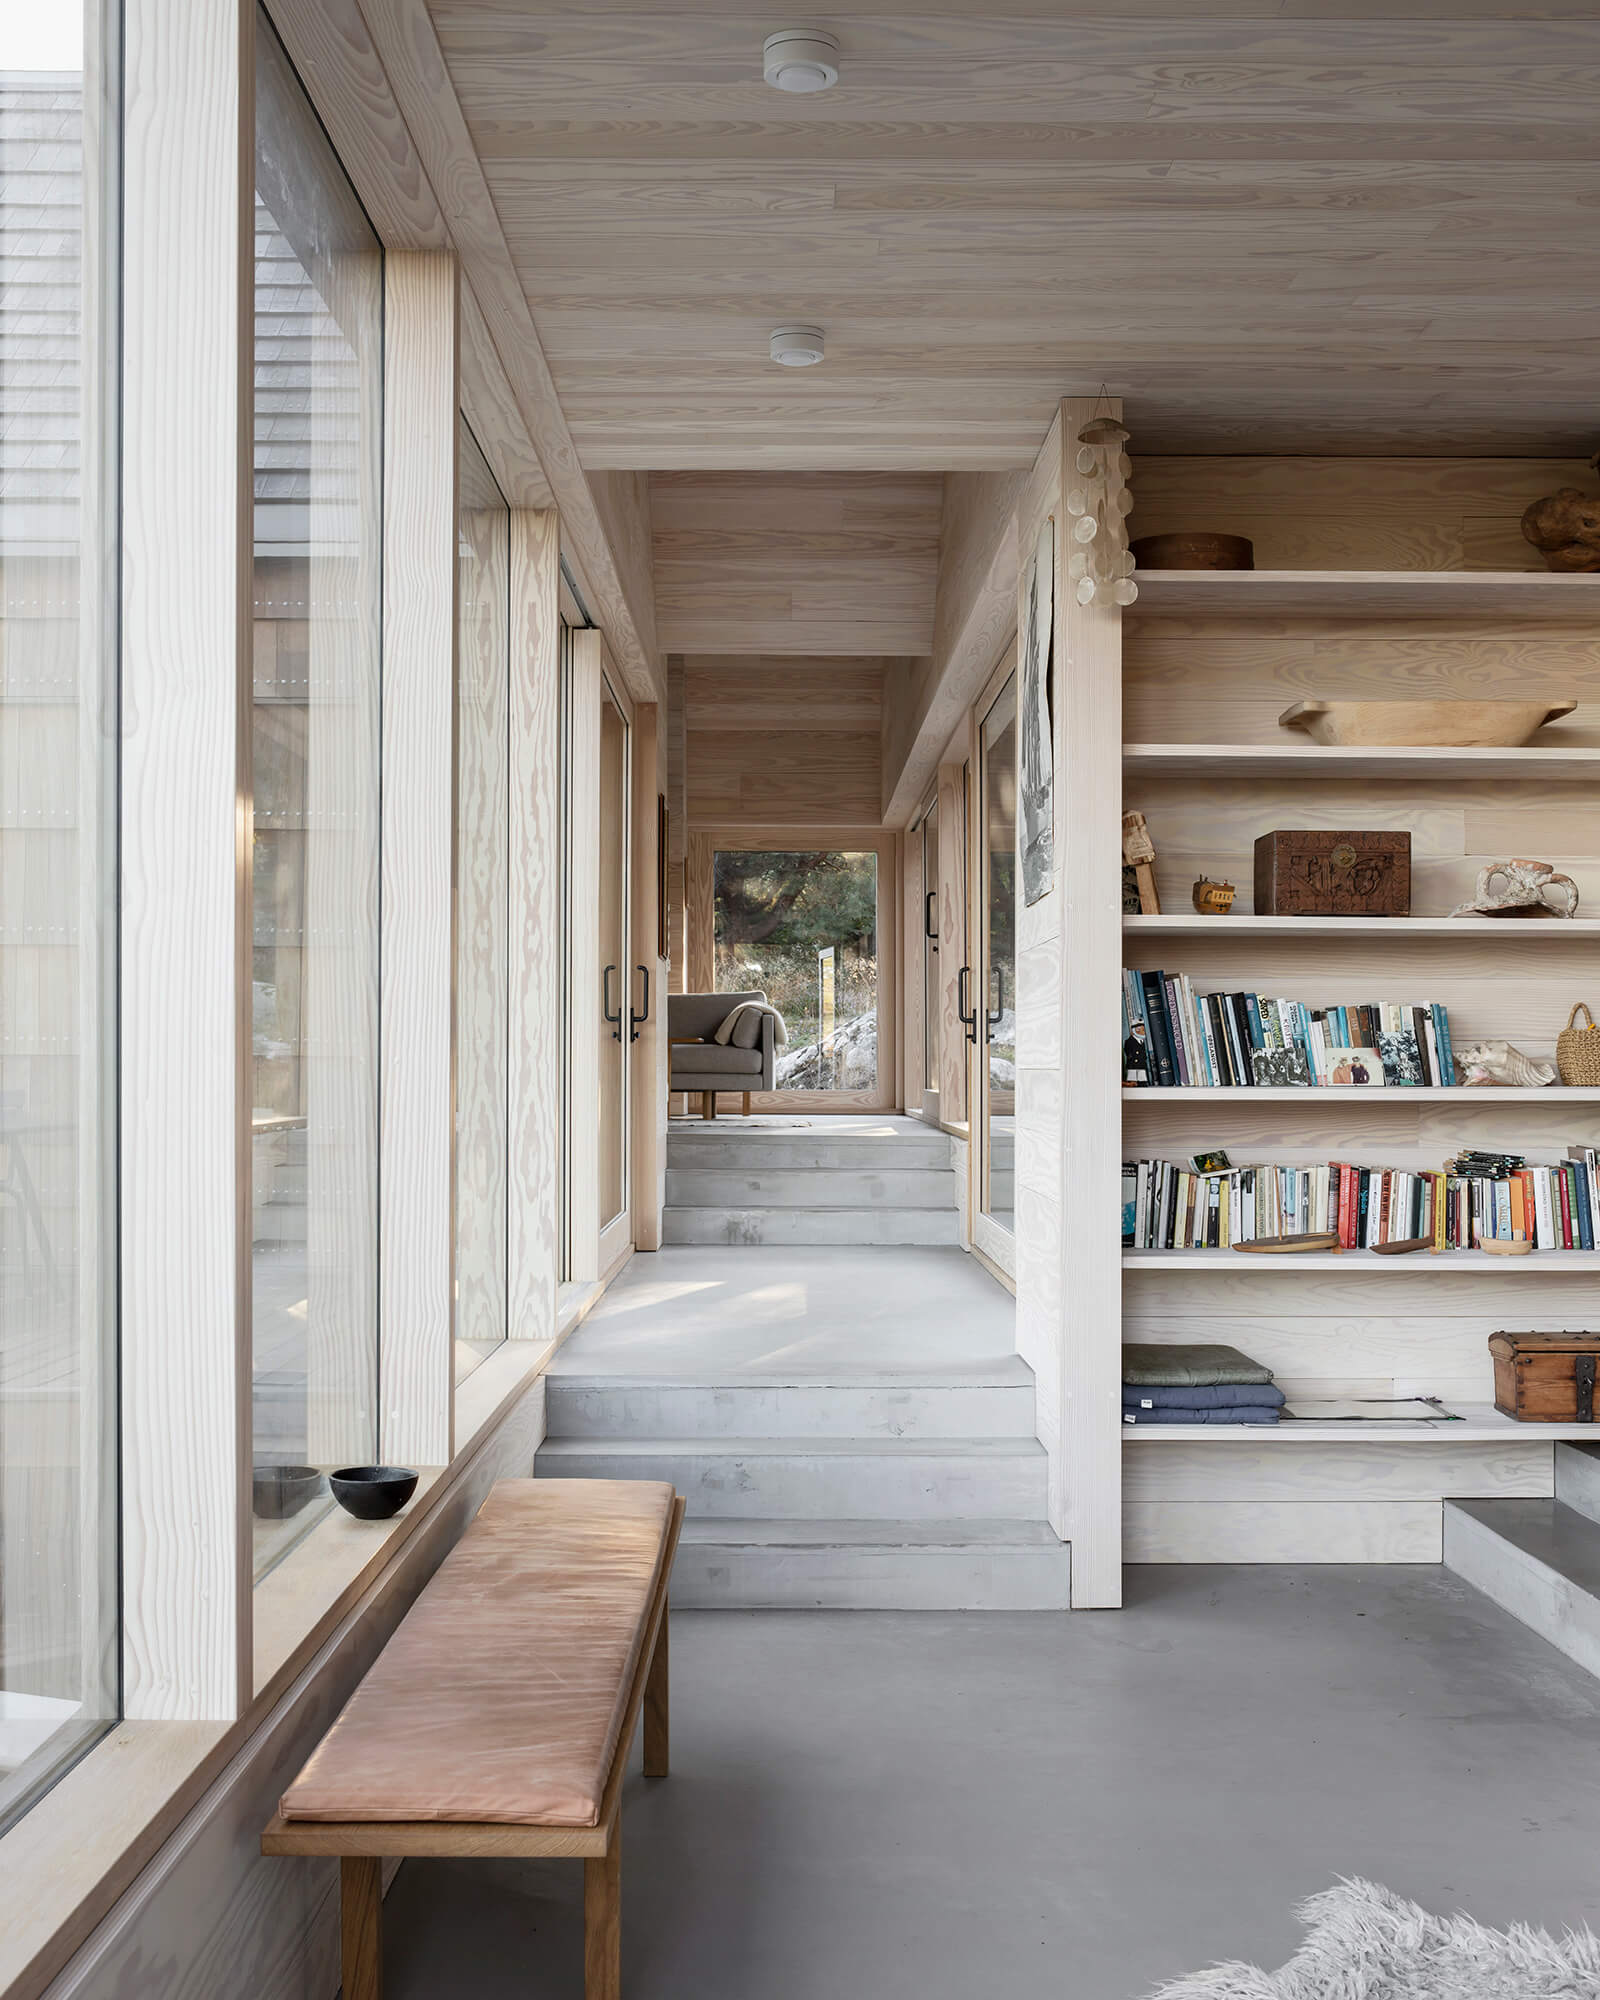 Le couloir relie les espaces séparés | Saltviga House | Kolman Boye Architects | STIRworld